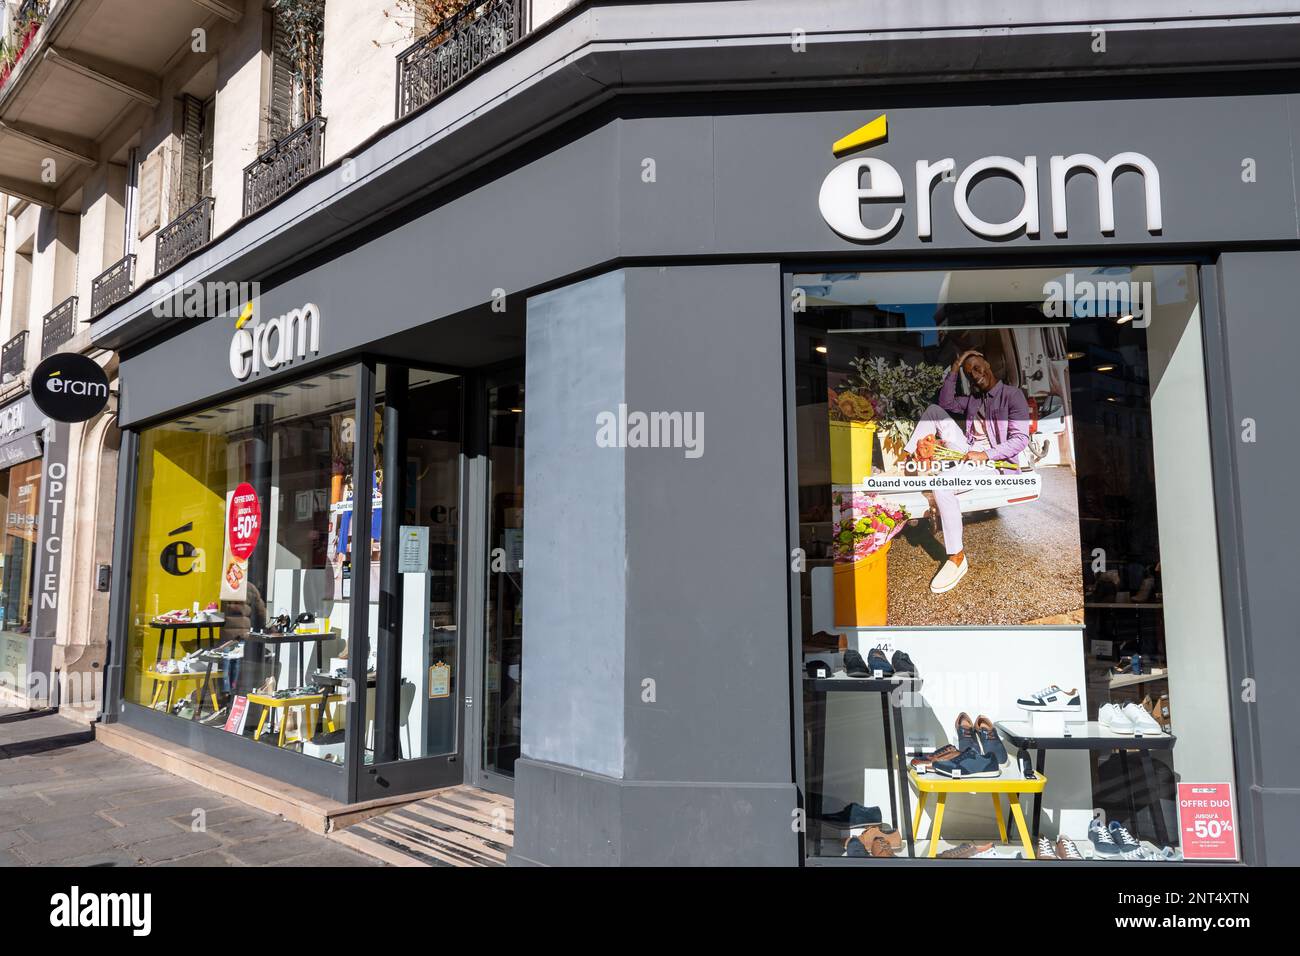 Vue extérieure d'un magasin Eram, une société de distribution française spécialisée dans les chaussures et les vêtements Banque D'Images